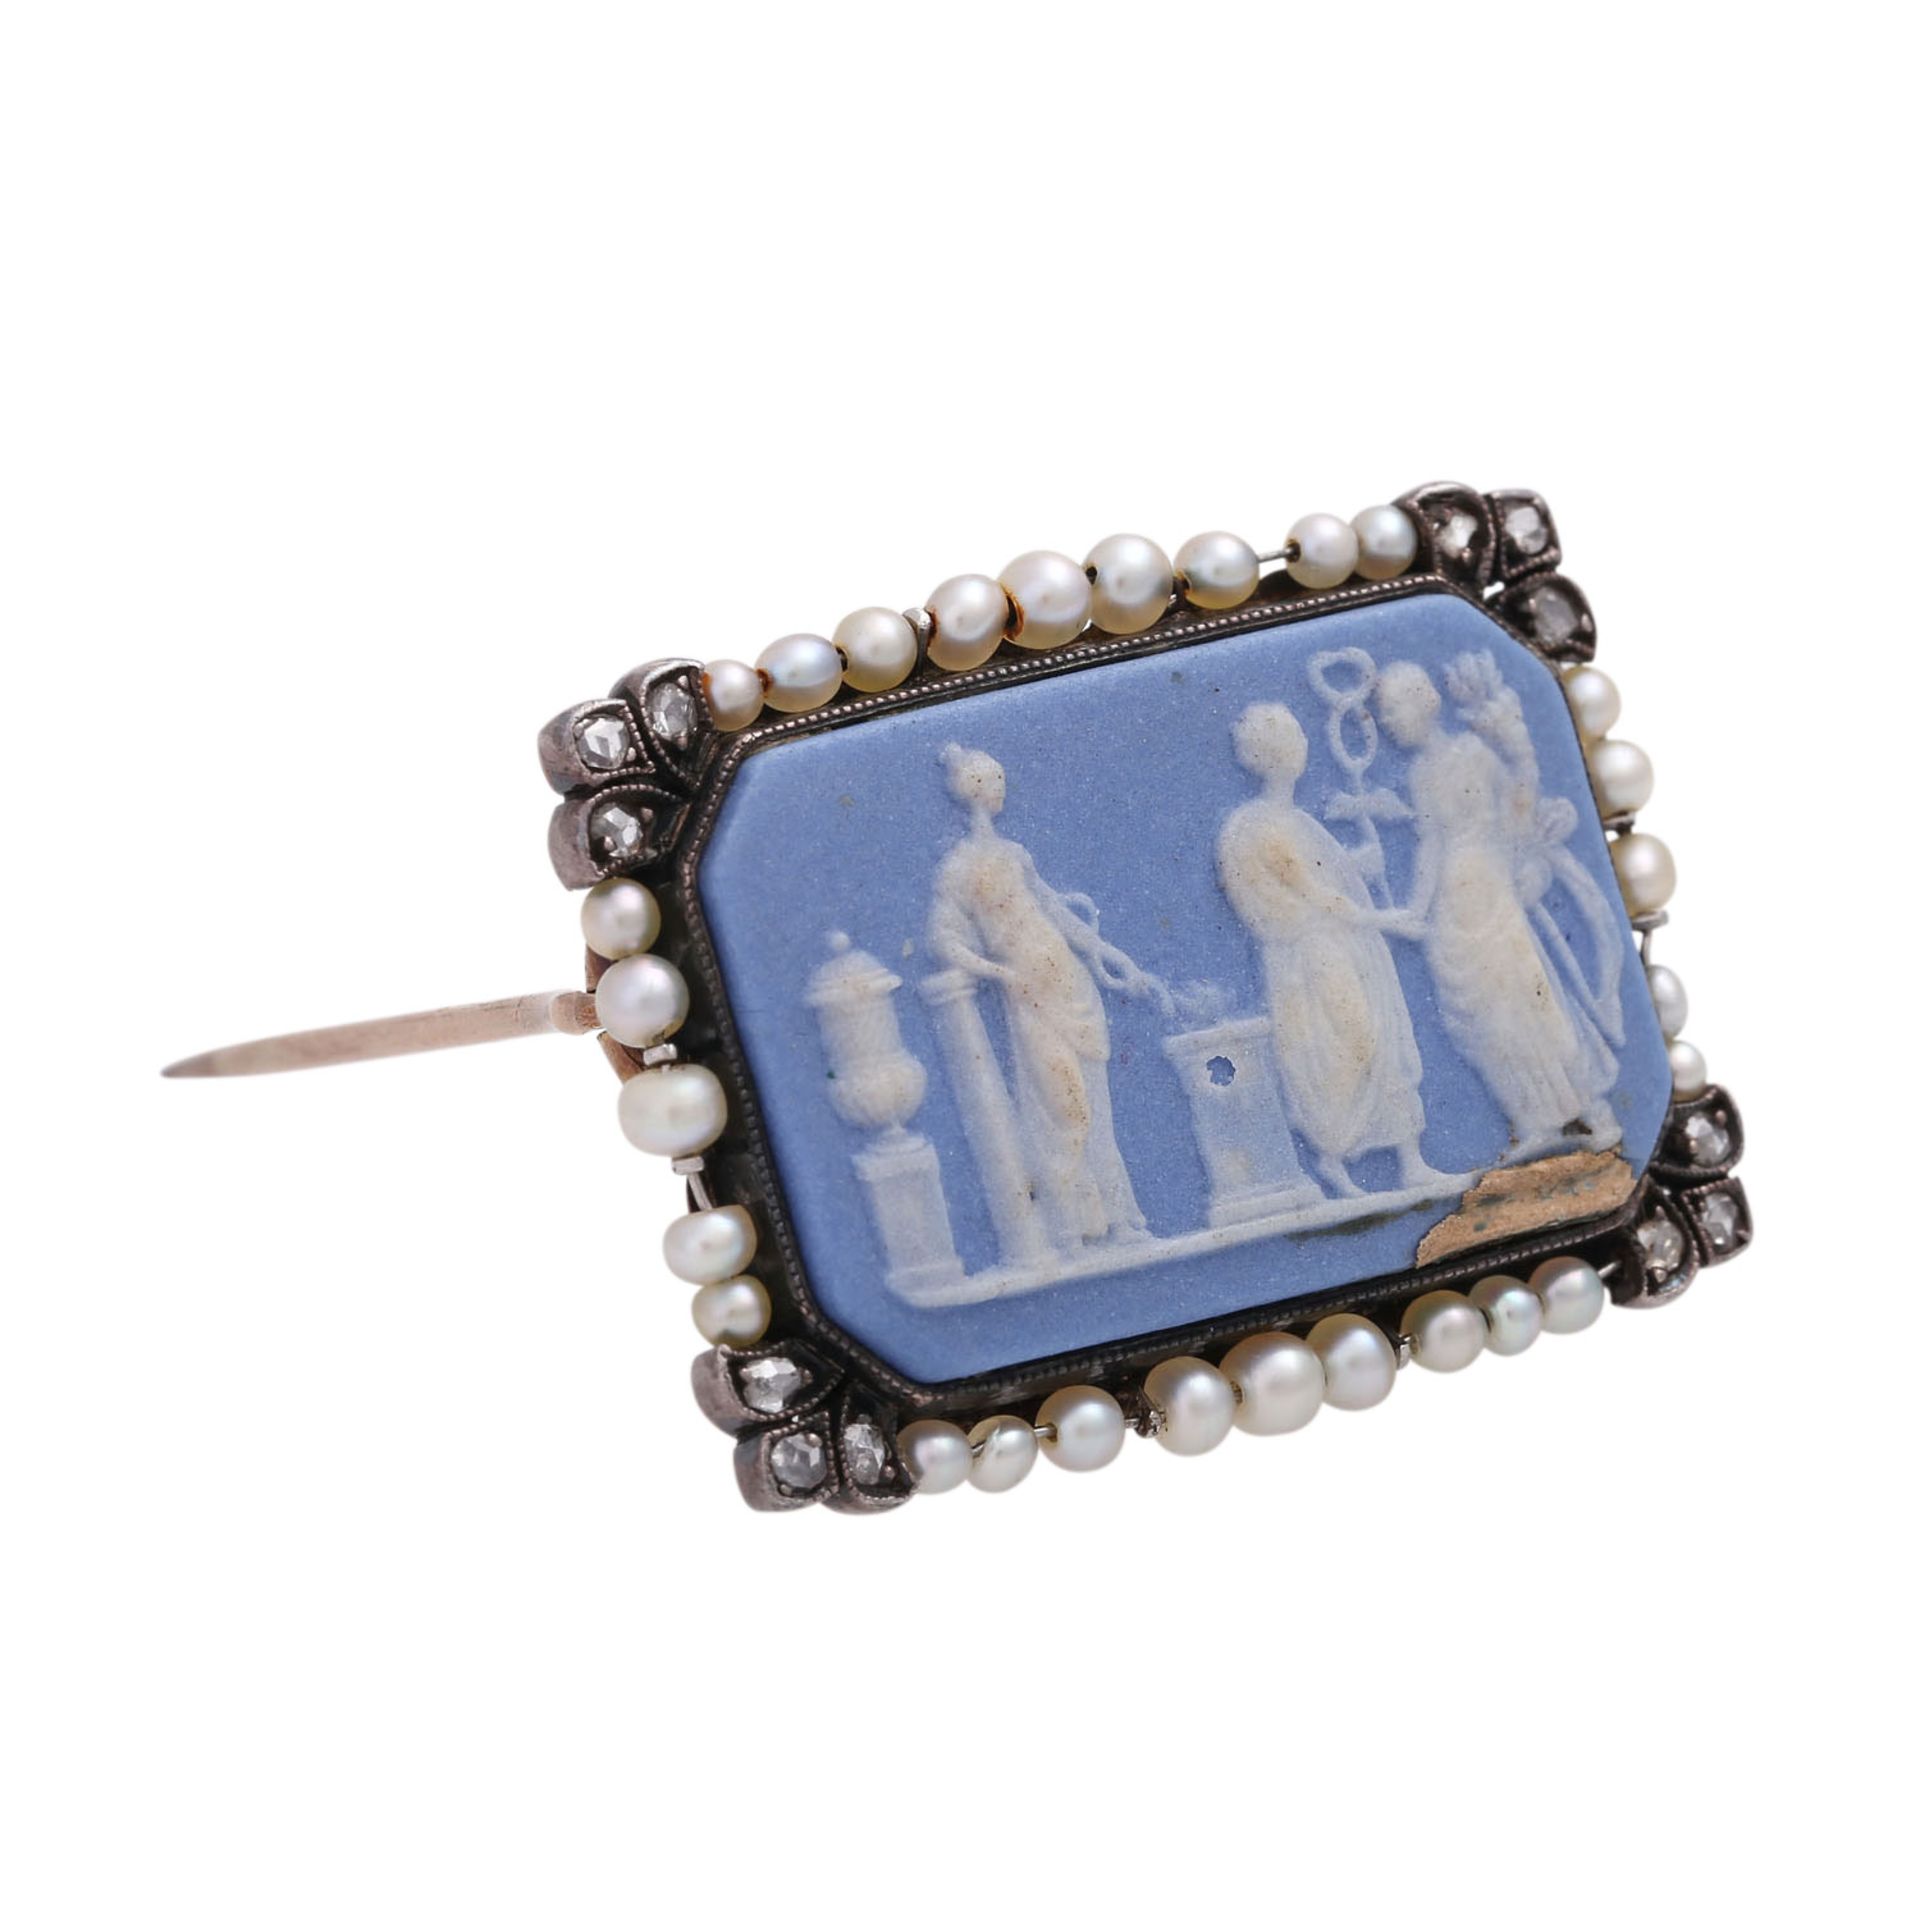 Brosche mit Keramikplatte (Wedgewood), achteckig, hellblau-weiß,mit hübschem Rahmen aus Naturperlen, - Bild 2 aus 4